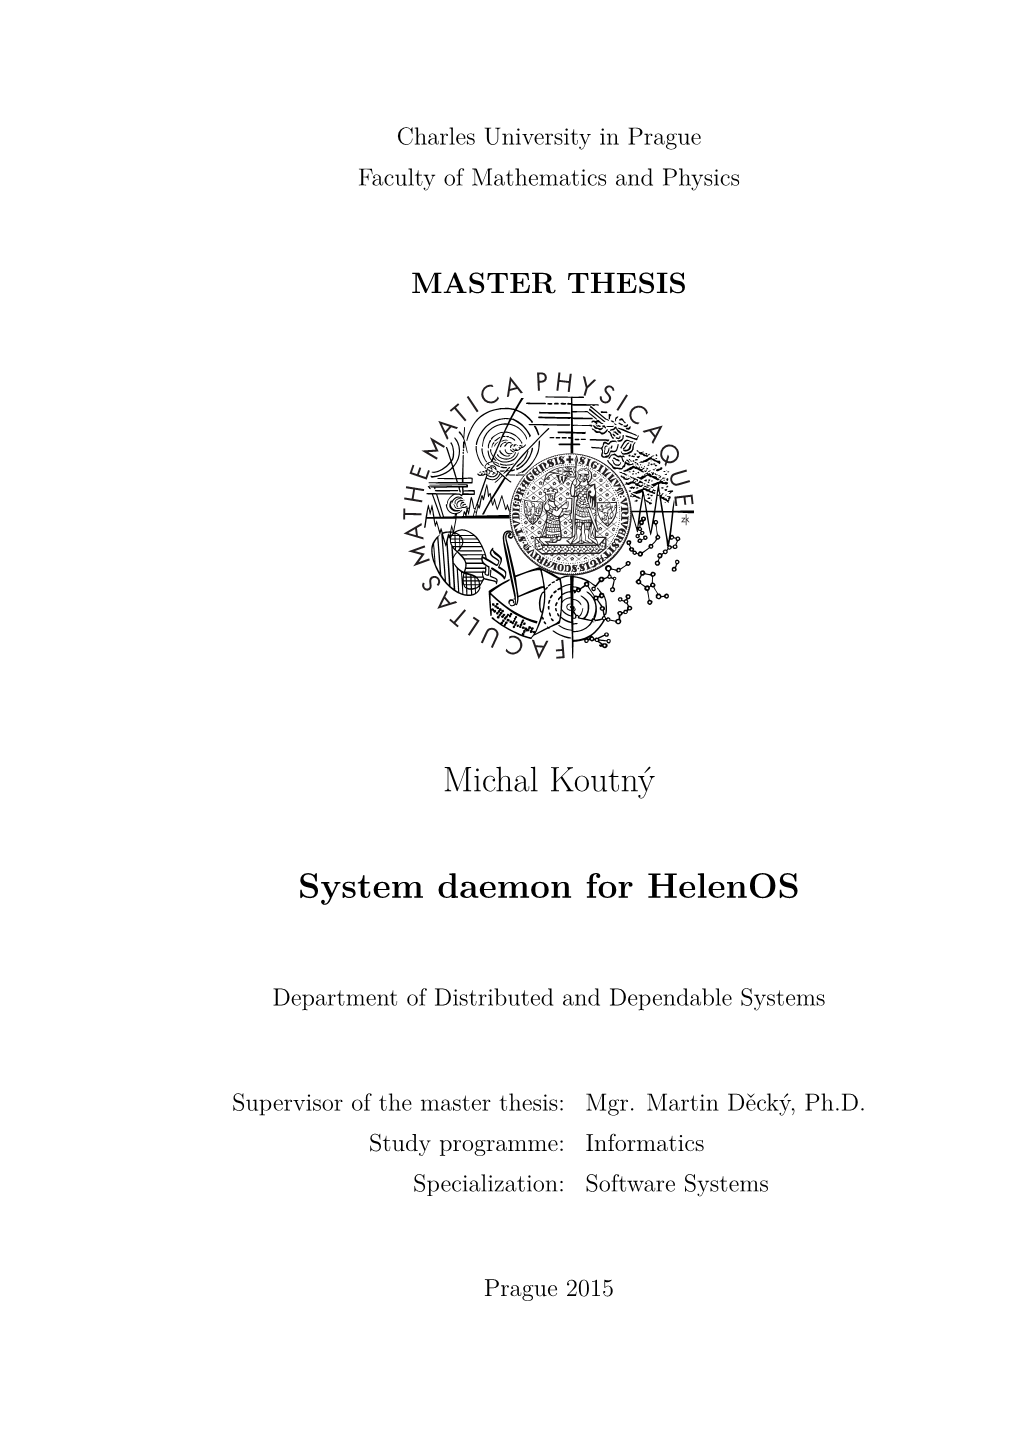 System Daemon for Helenos